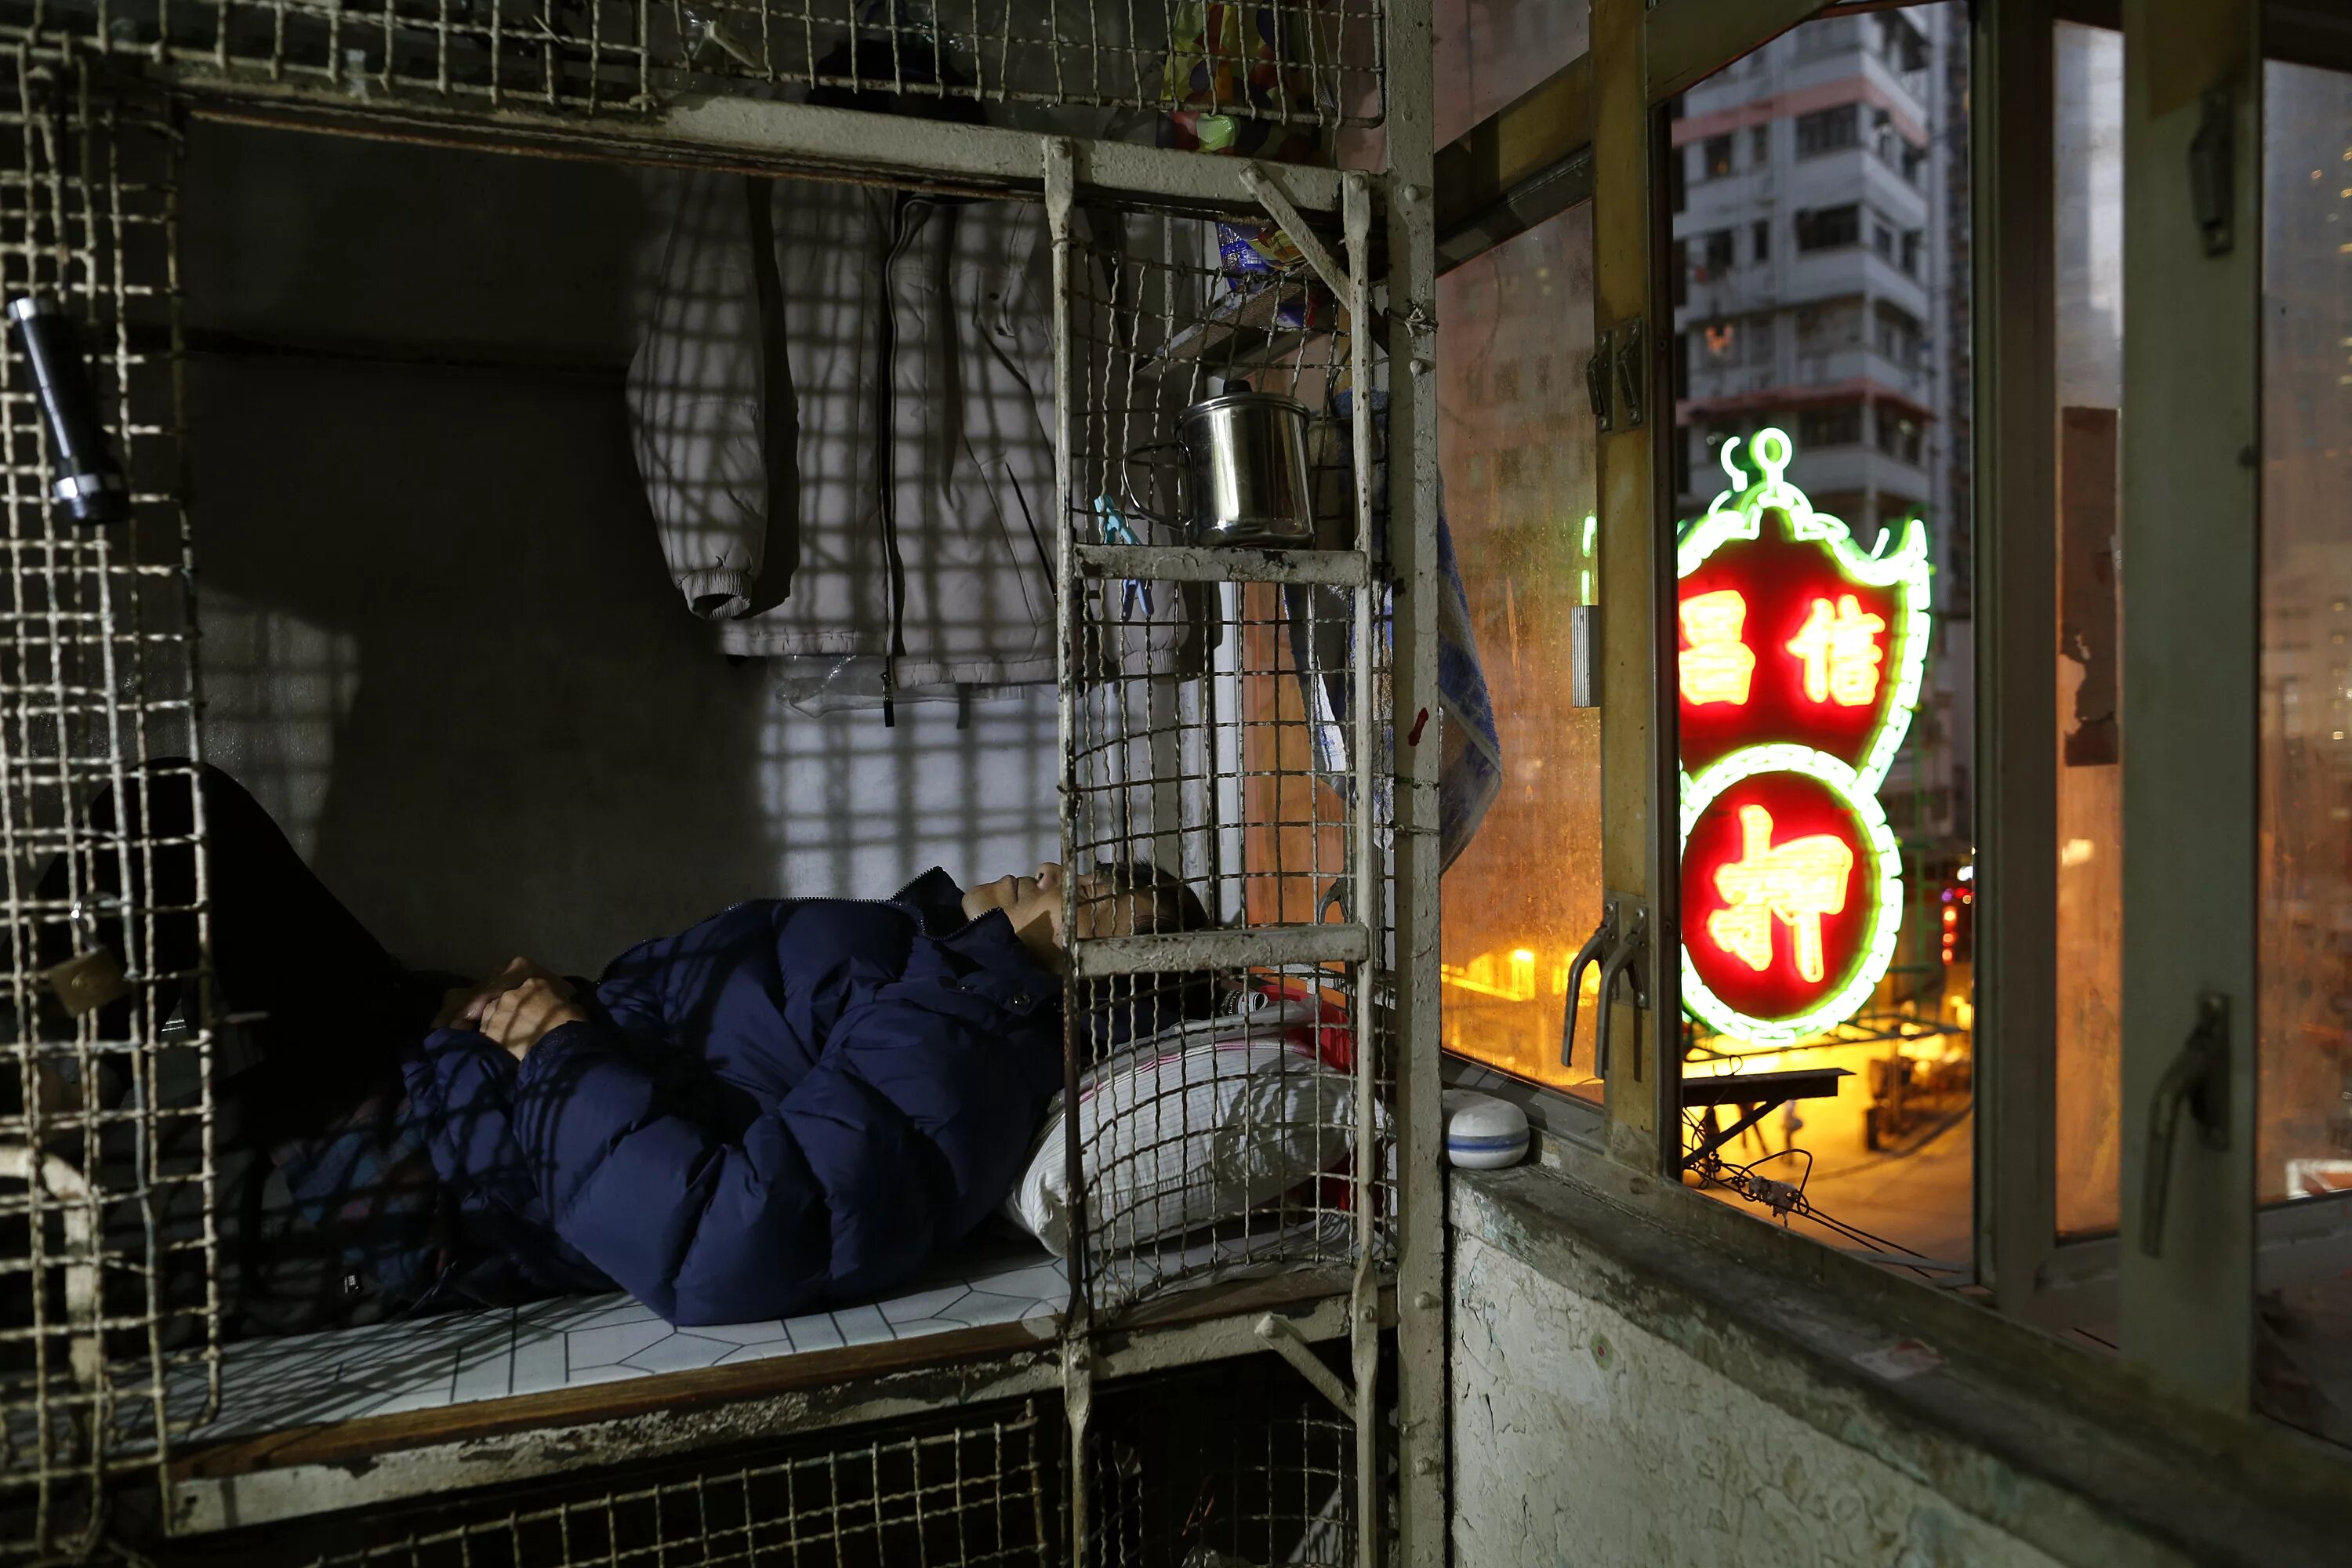 Снится квартира в которой жили раньше. Гонконг трущобы в клетках. Трущобы Гонконга внутри квартир. Люди живут в клетках в Гонконге.